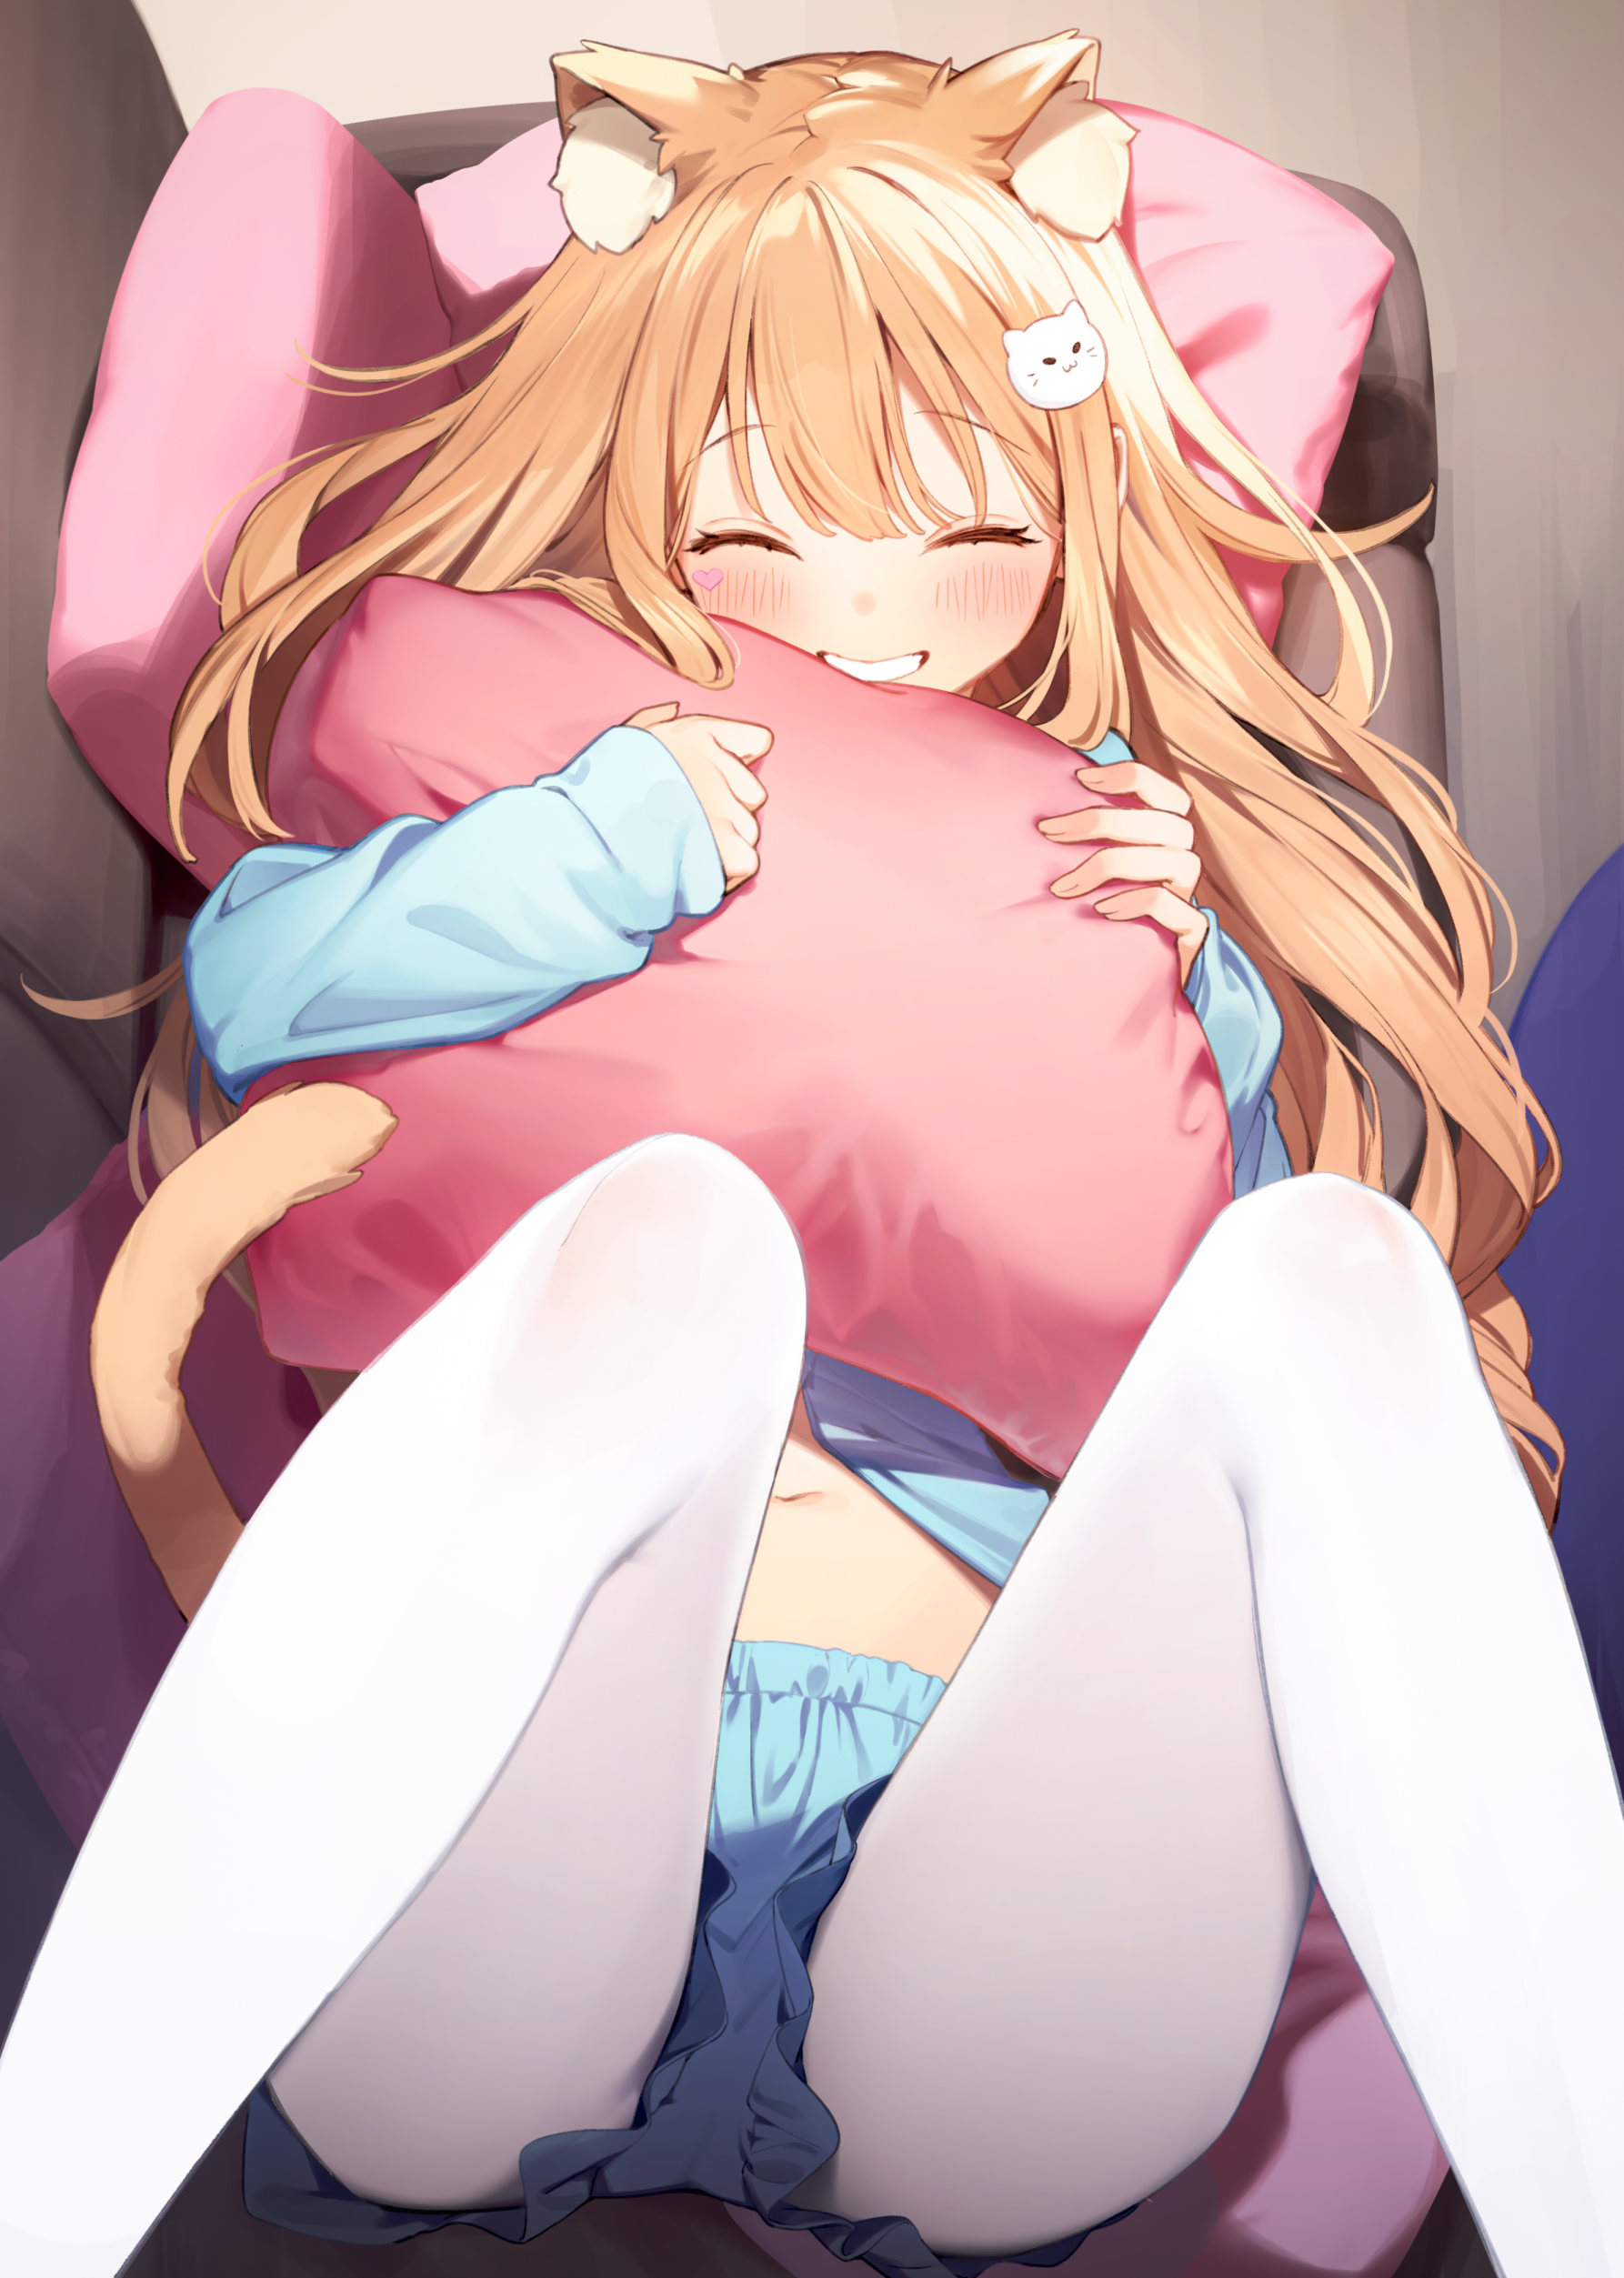 Anime 1786x2505 anime anime girls Nyum Serori artwork cat girl blonde blushing smiling pillow hug lying on back legs up pantyhose